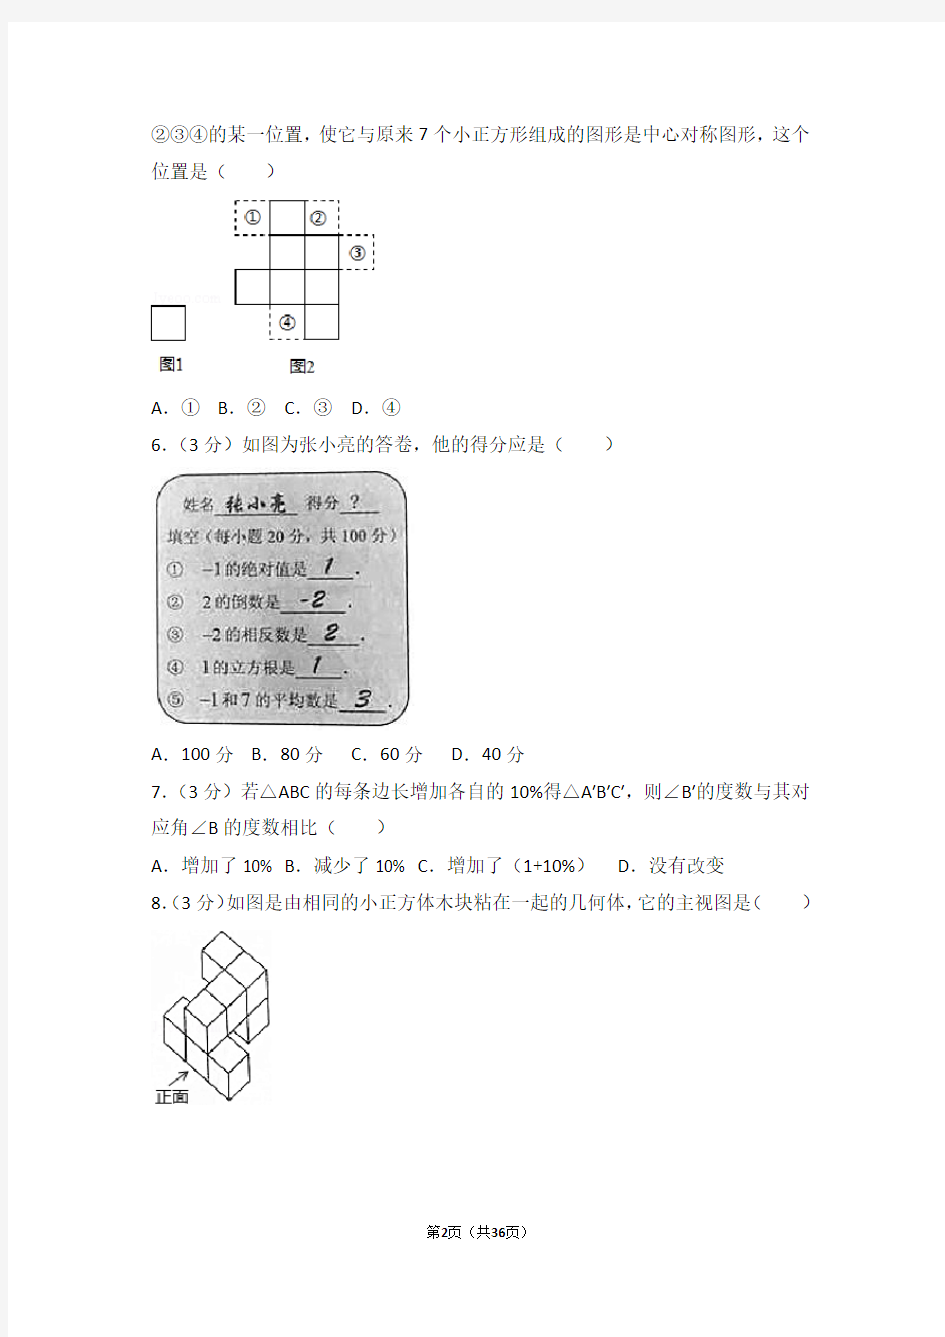 (完整版)17-2017年河北省中考数学试卷